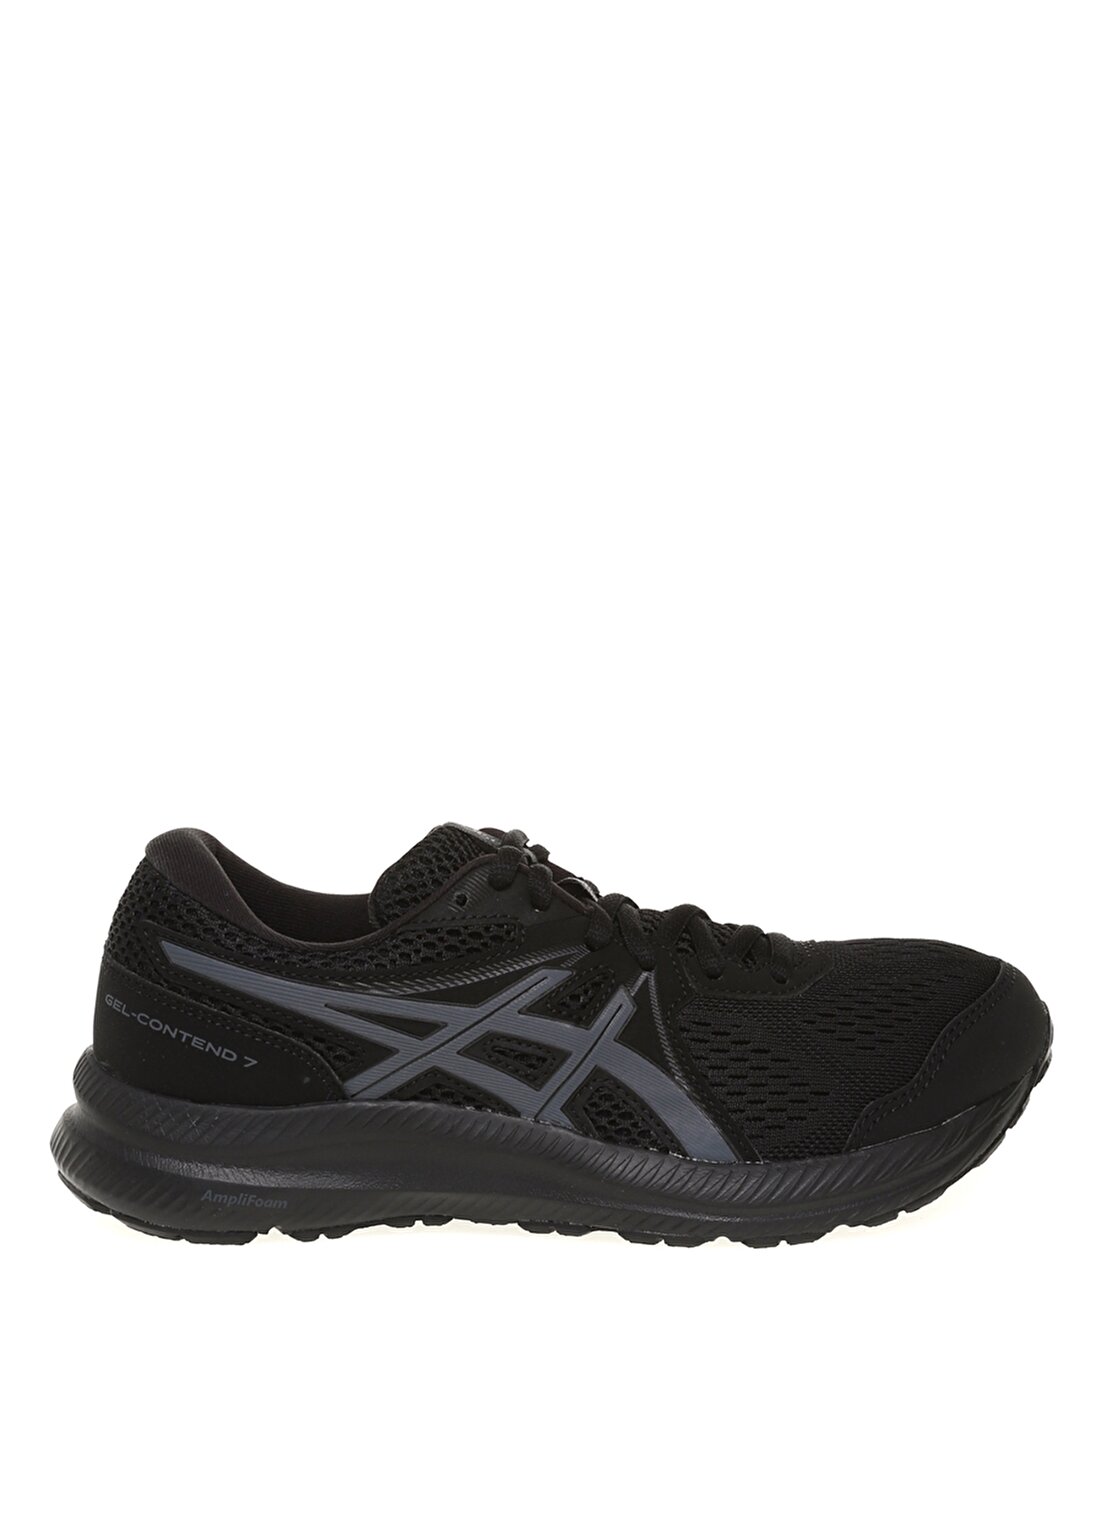 Asics 1012A911-001 GEL-CONTEND 7 Siyah - Gri Kadın Koşu Ayakkabısı